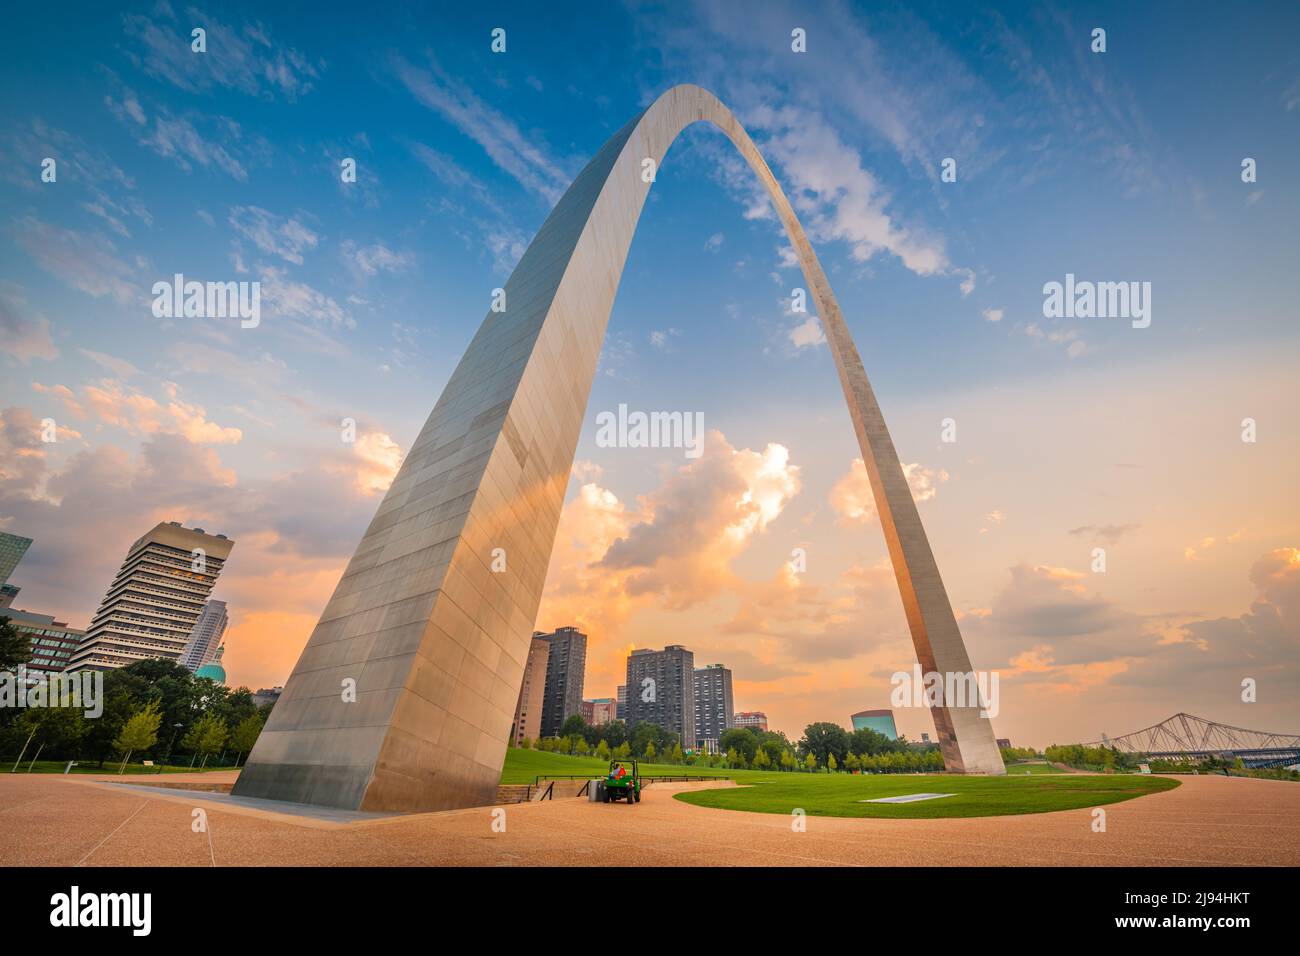 Downtown St. Louis, Missouri, USA von unterhalb des Bogens aus gesehen. Stockfoto